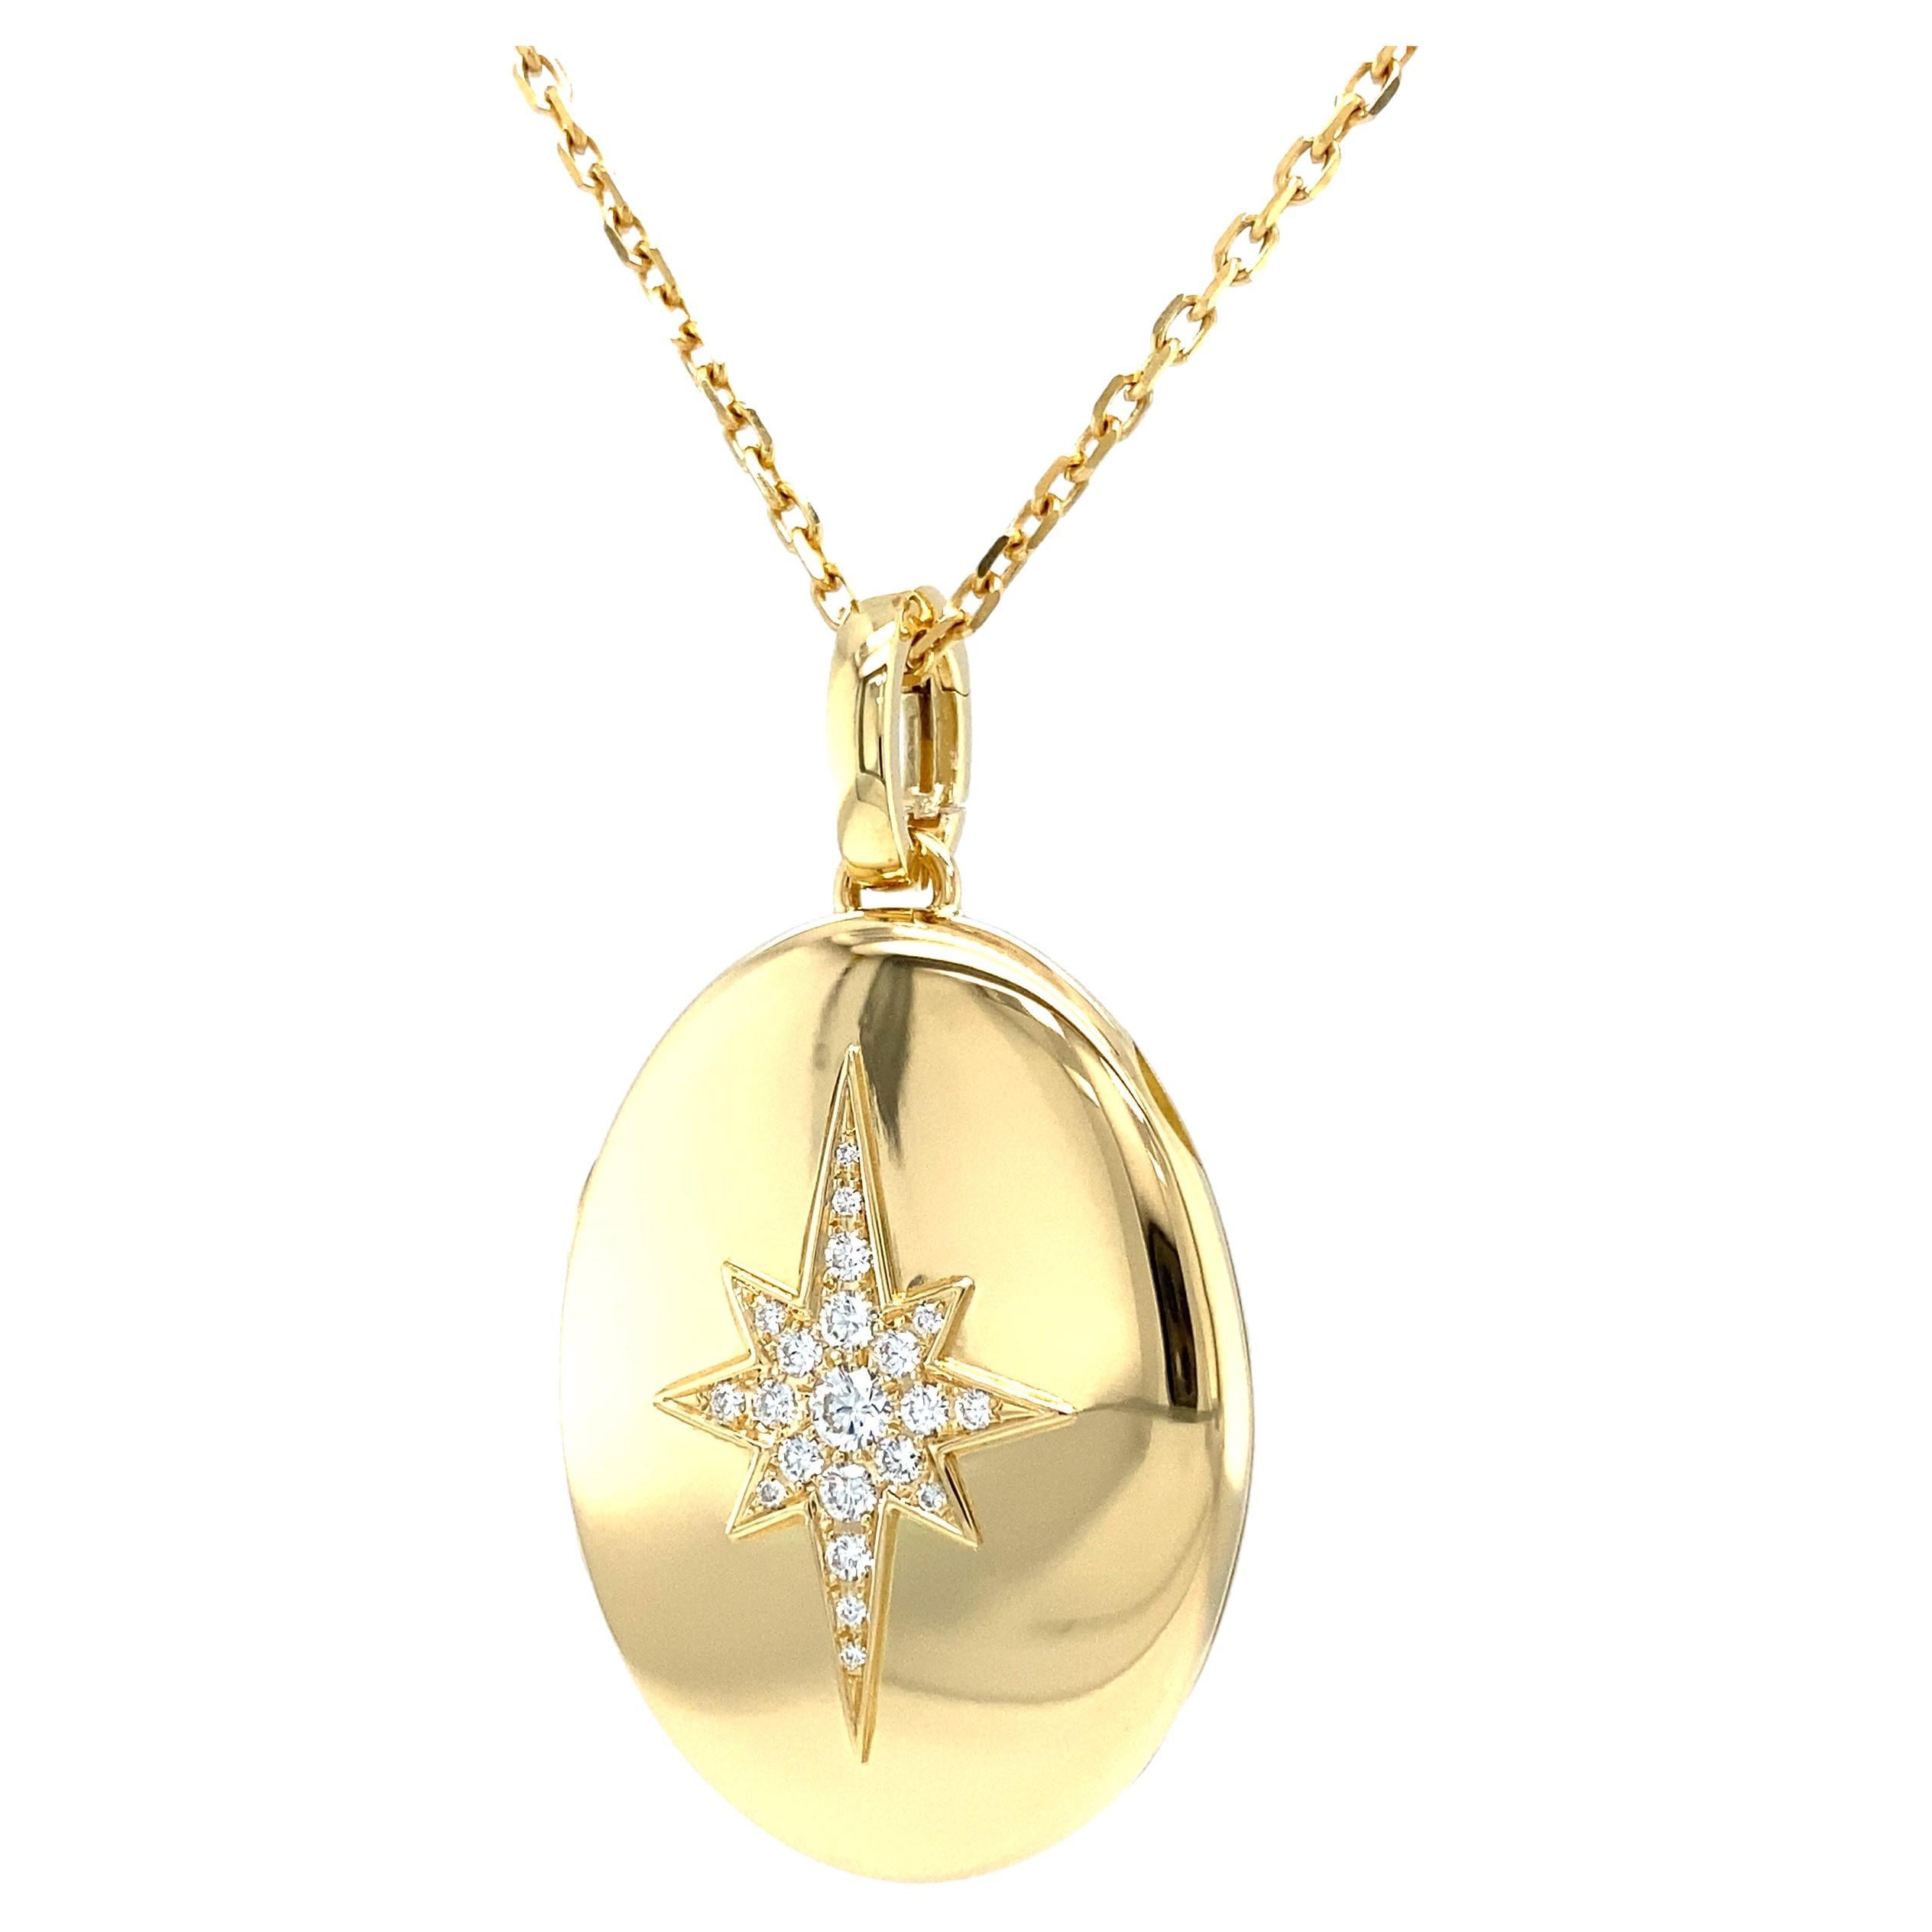 Collier pendentif médaillon ovale poli en or jaune 18 carats avec 9 diamants 0,14 carat G VS